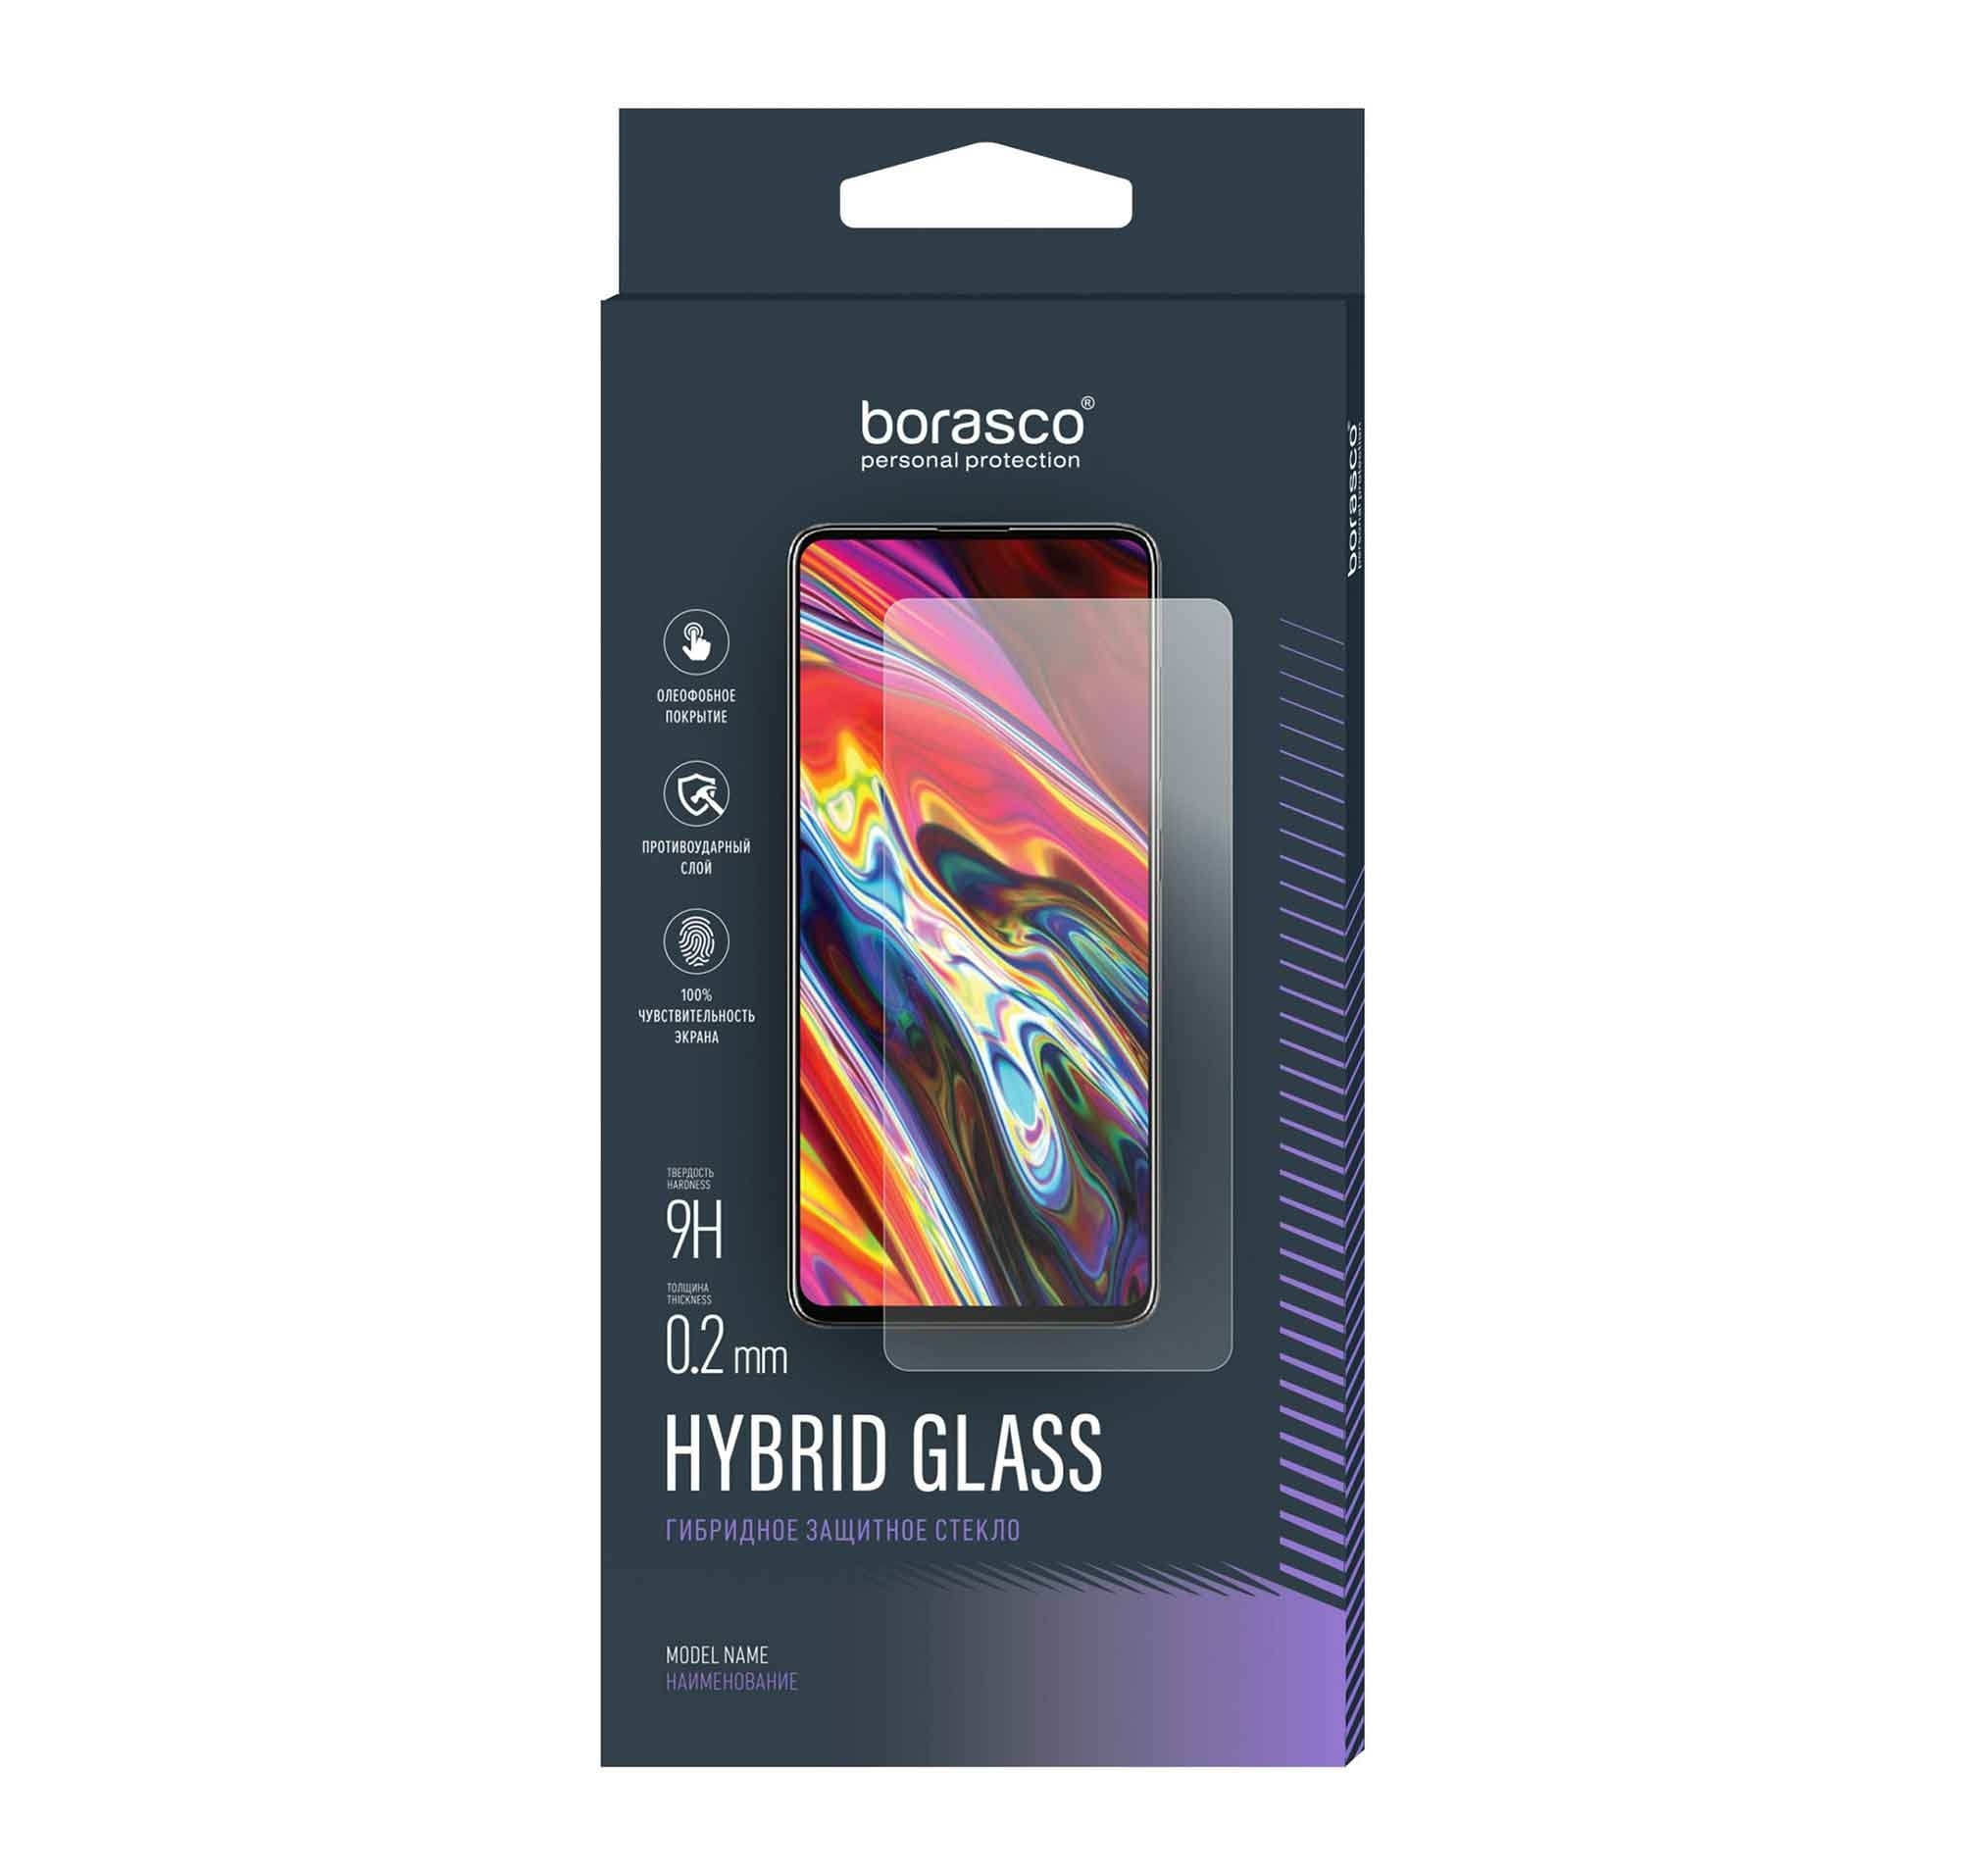 Стекло защитное BoraSCO Hybrid Glass для Oukitel F150 Air 1 Pro / B1 / B1 Pro защитное стекло для oukitel f150 air 1 pro b1 b1 pro оукител ф150 айр 1 про б1 б1 про гибридное гибкое стекло только на камеру 2 шт